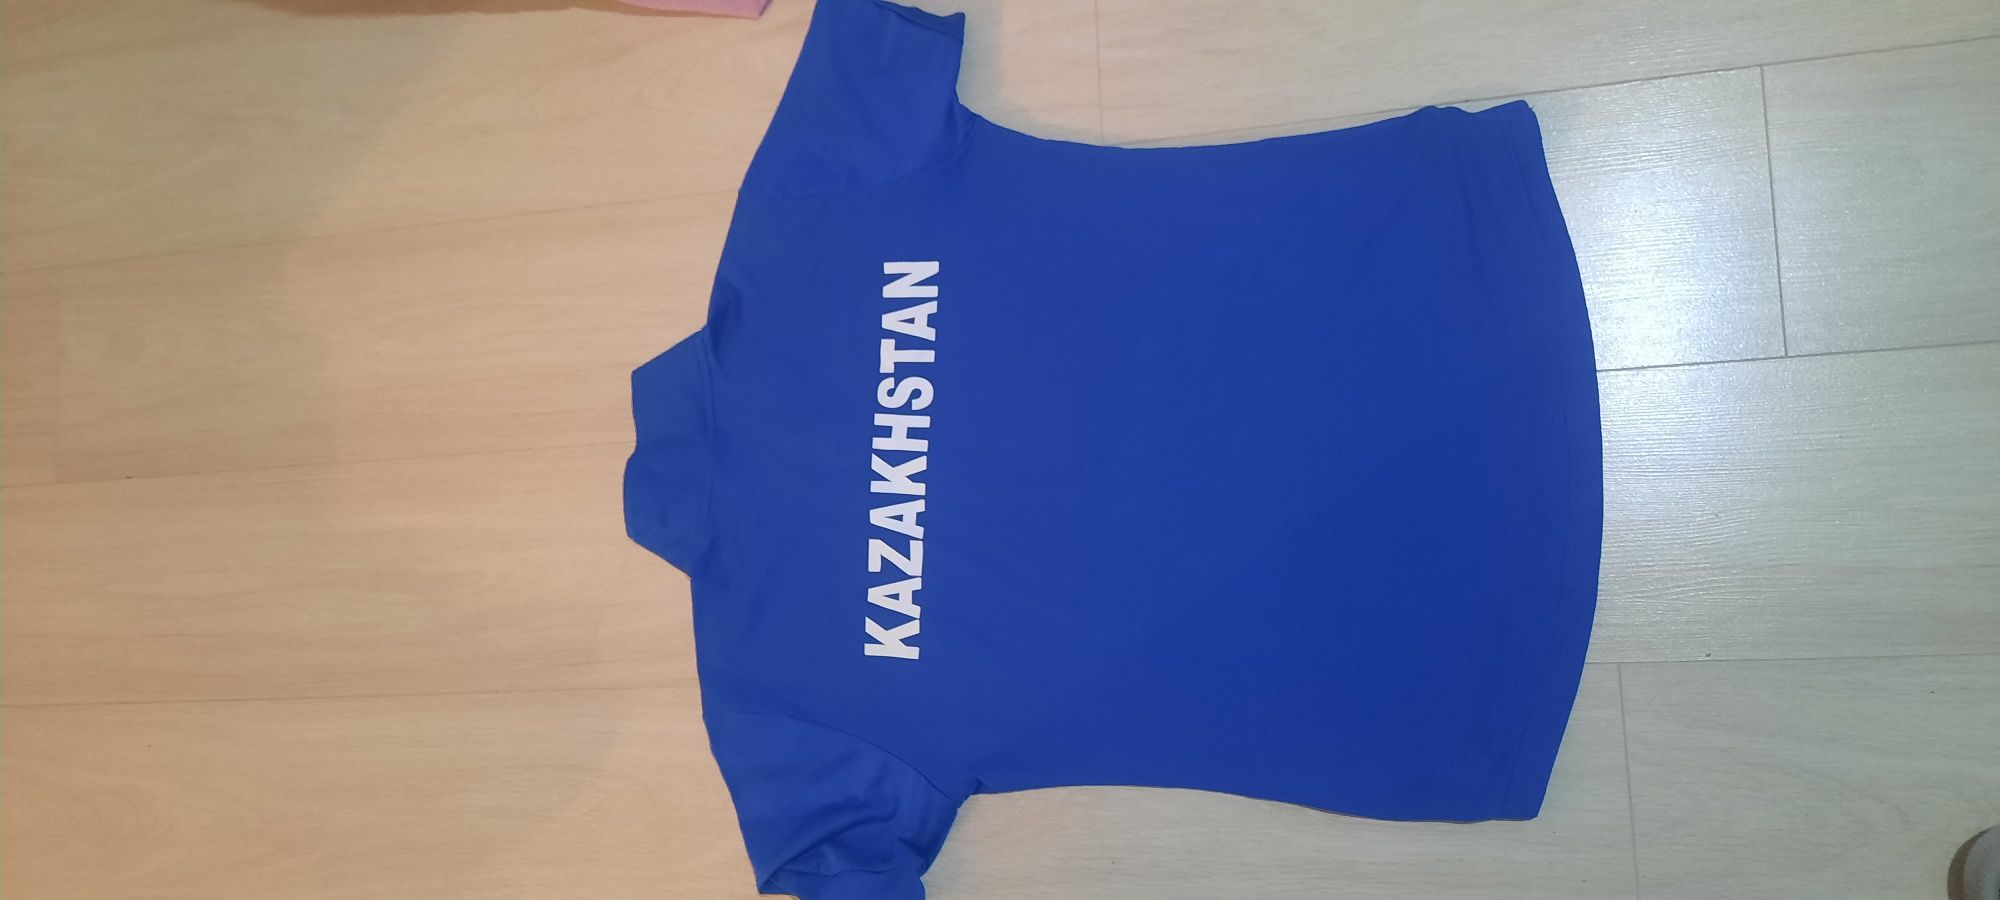 Продаю футболку сборная Казахстана